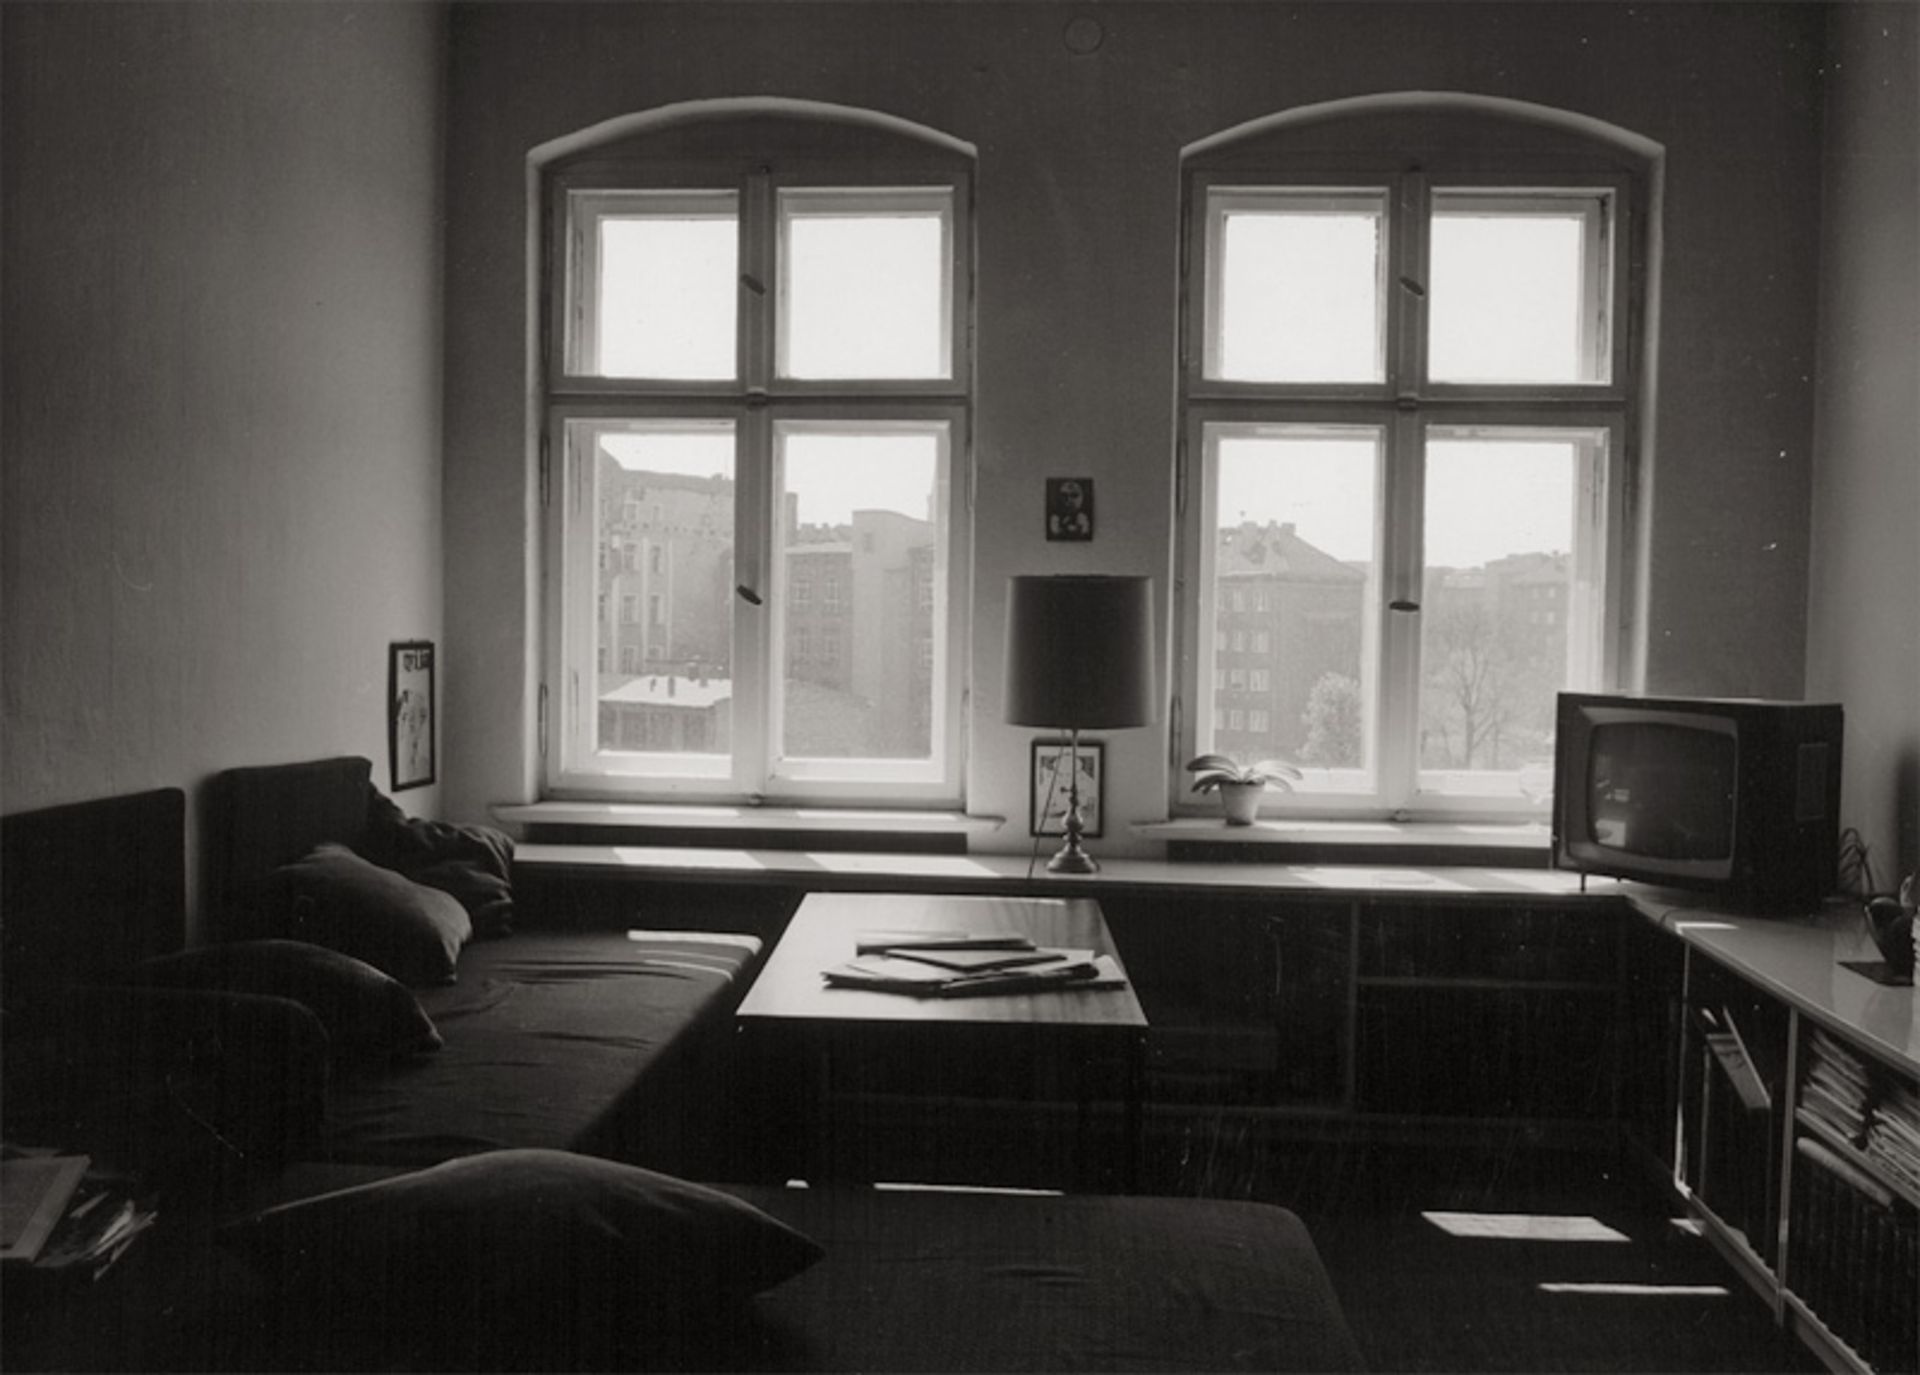 Heyden, Bernd: Living room; Interior, Berlin